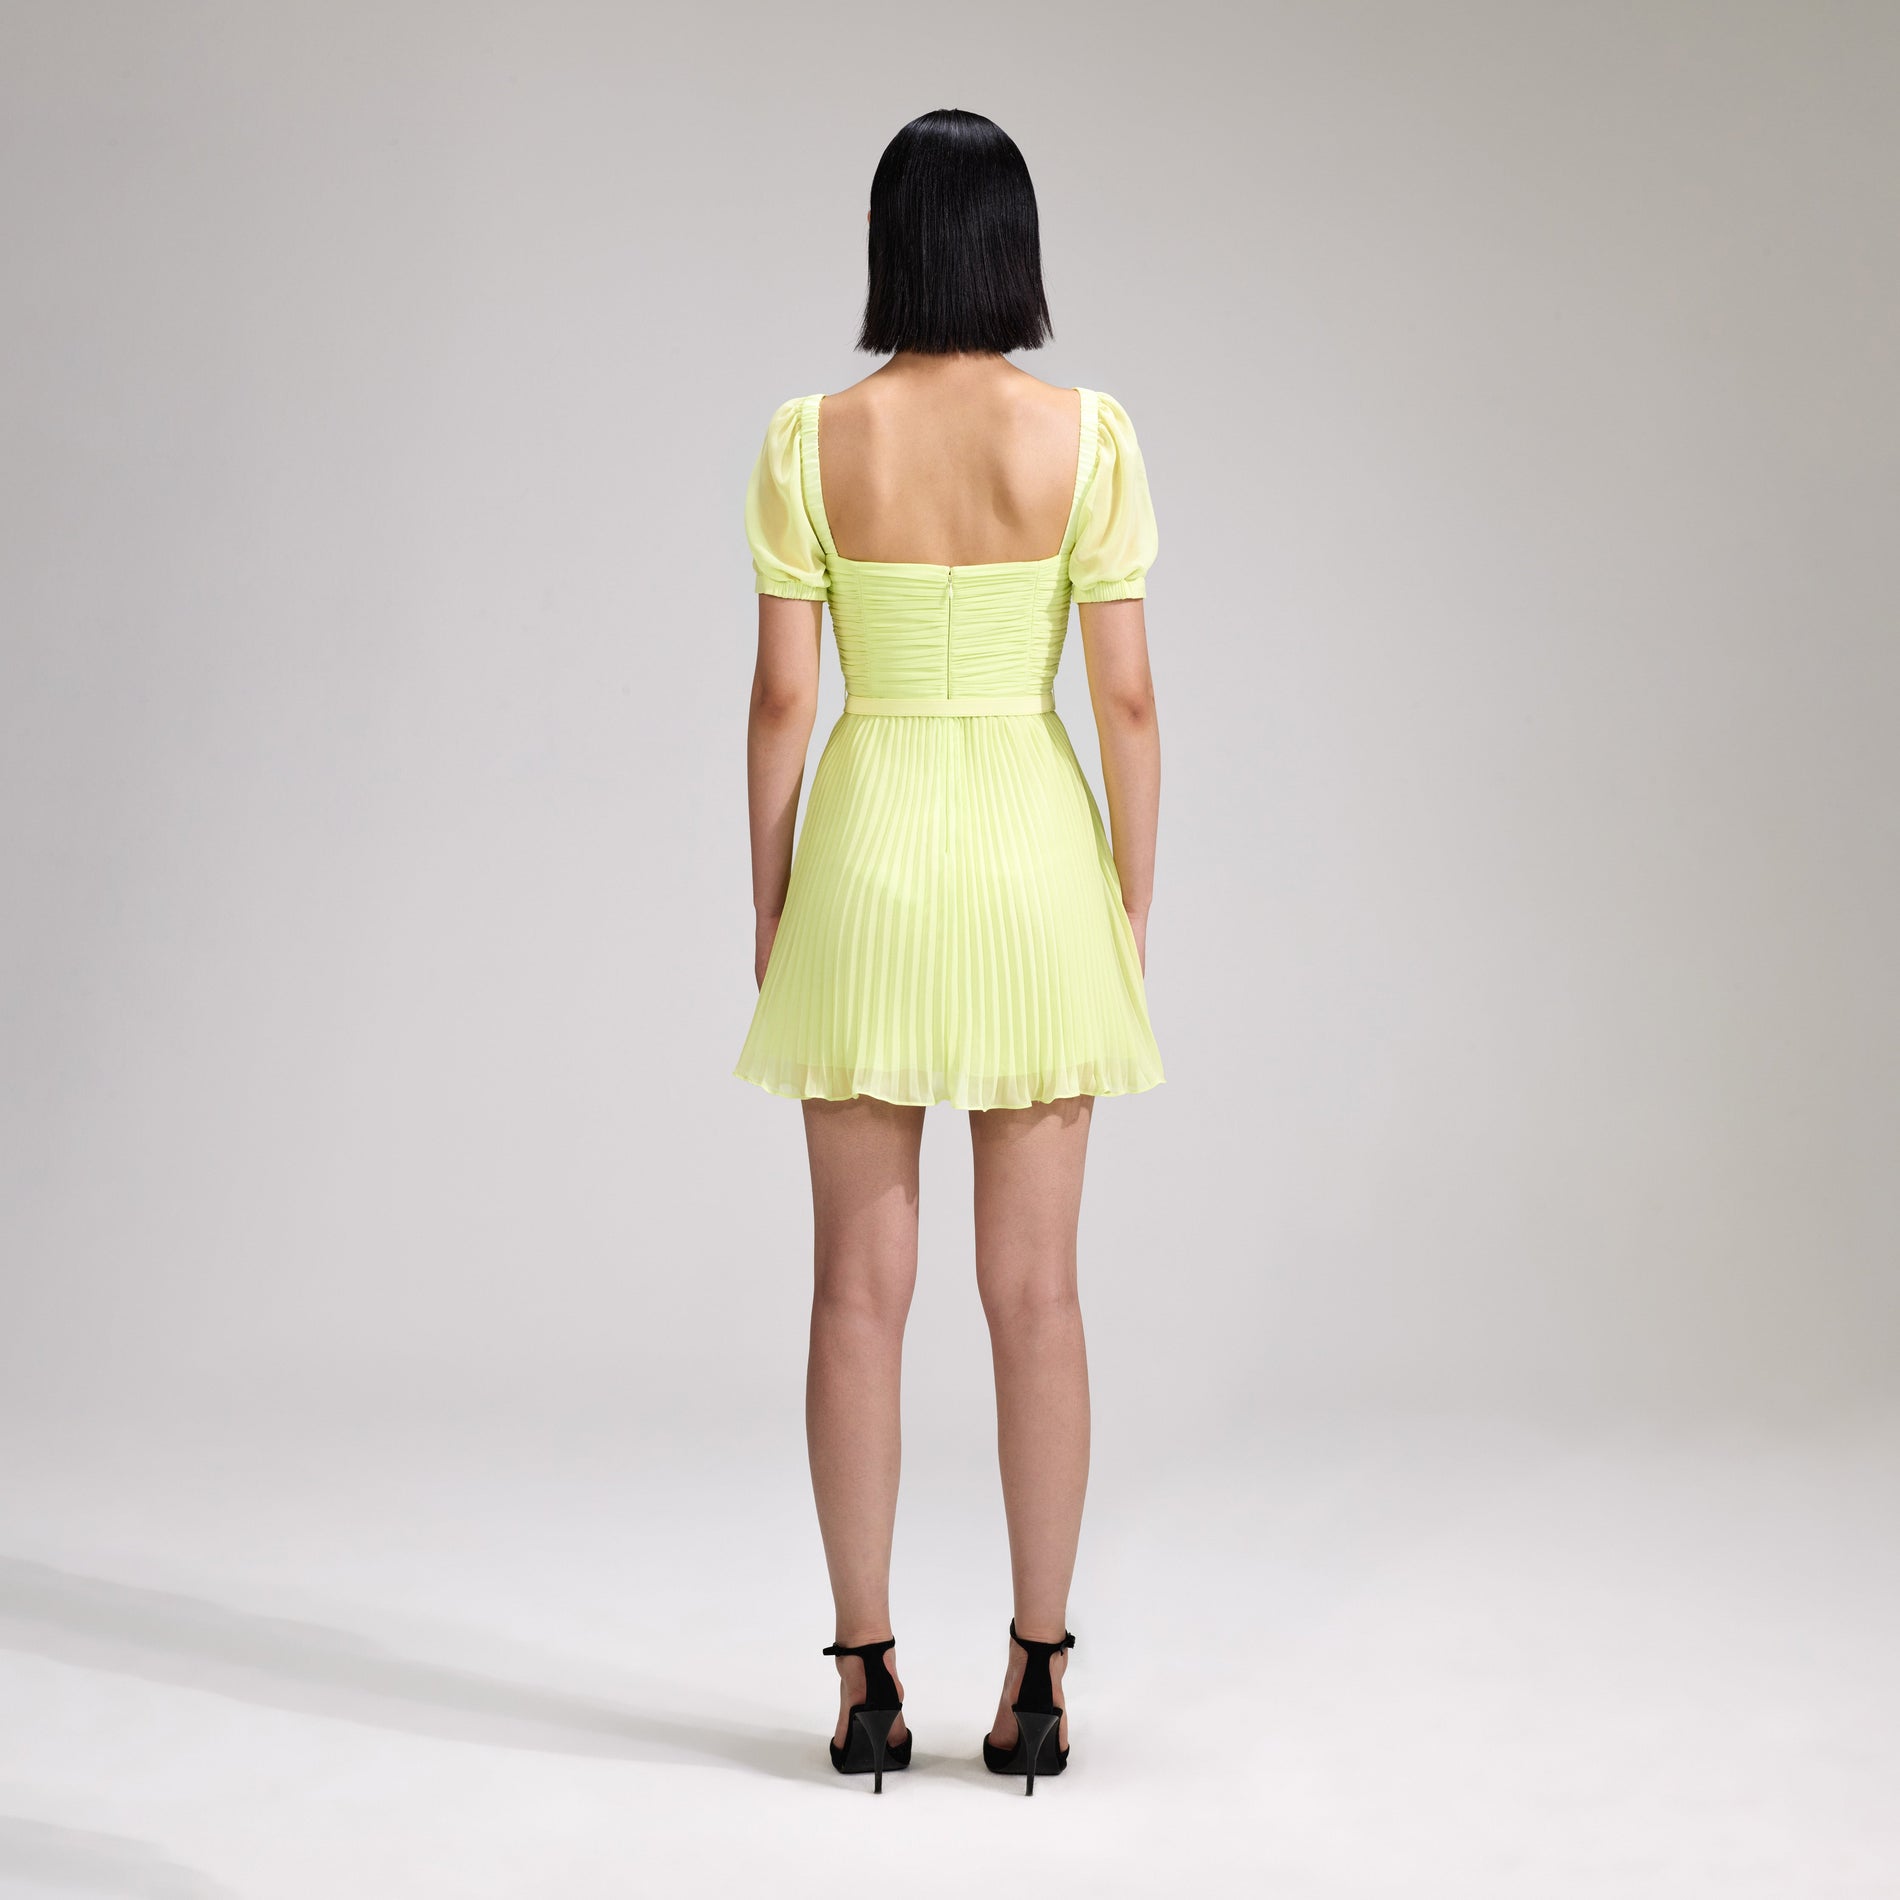 A woman wearing the Lime Chiffon Mini Dress